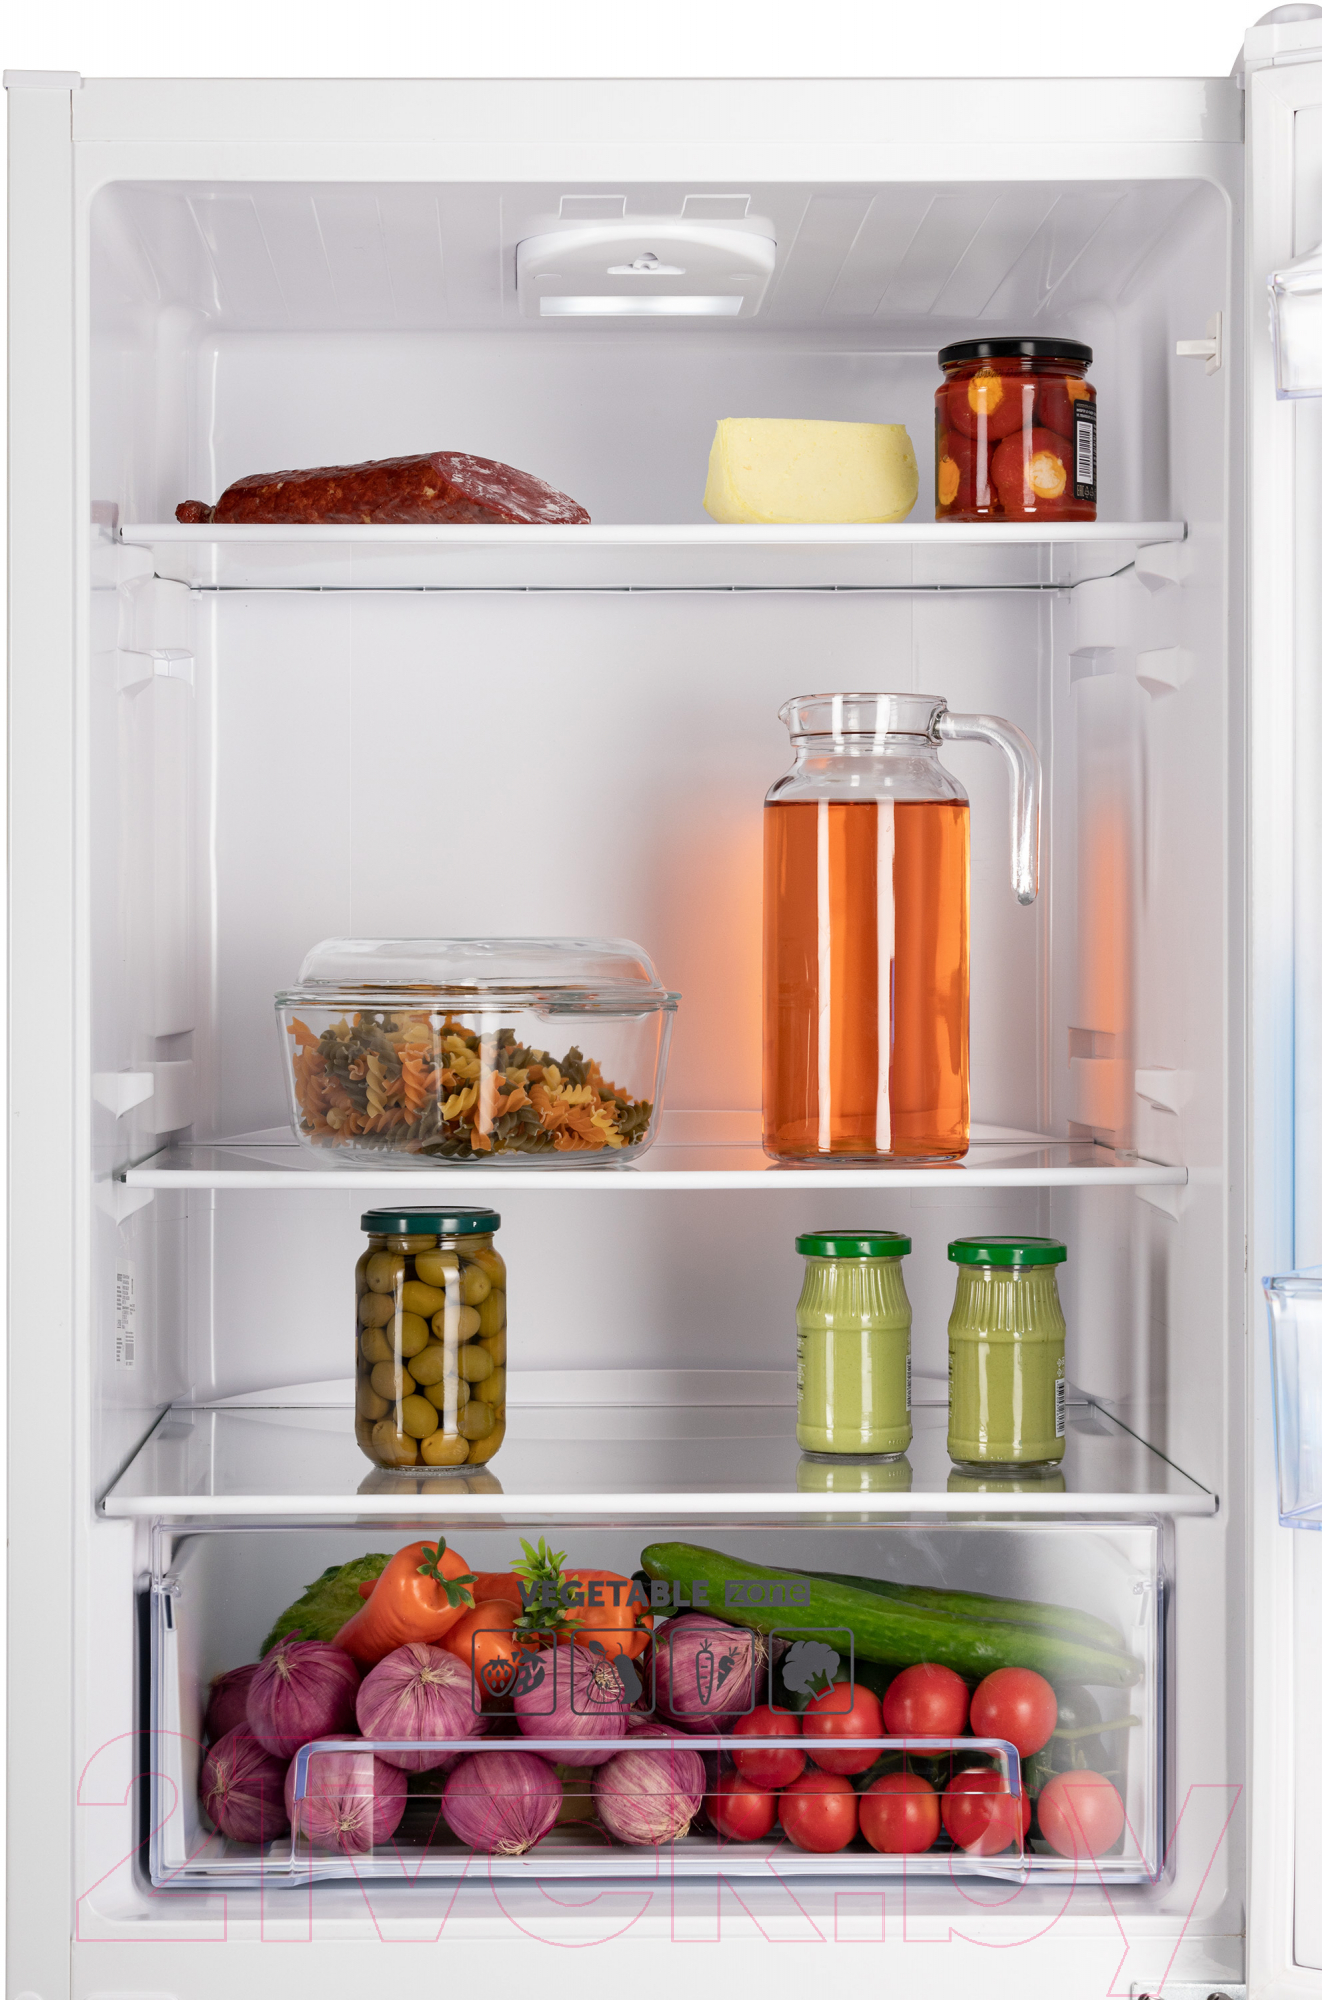 Холодильник с морозильником Nordfrost NRB 131 W